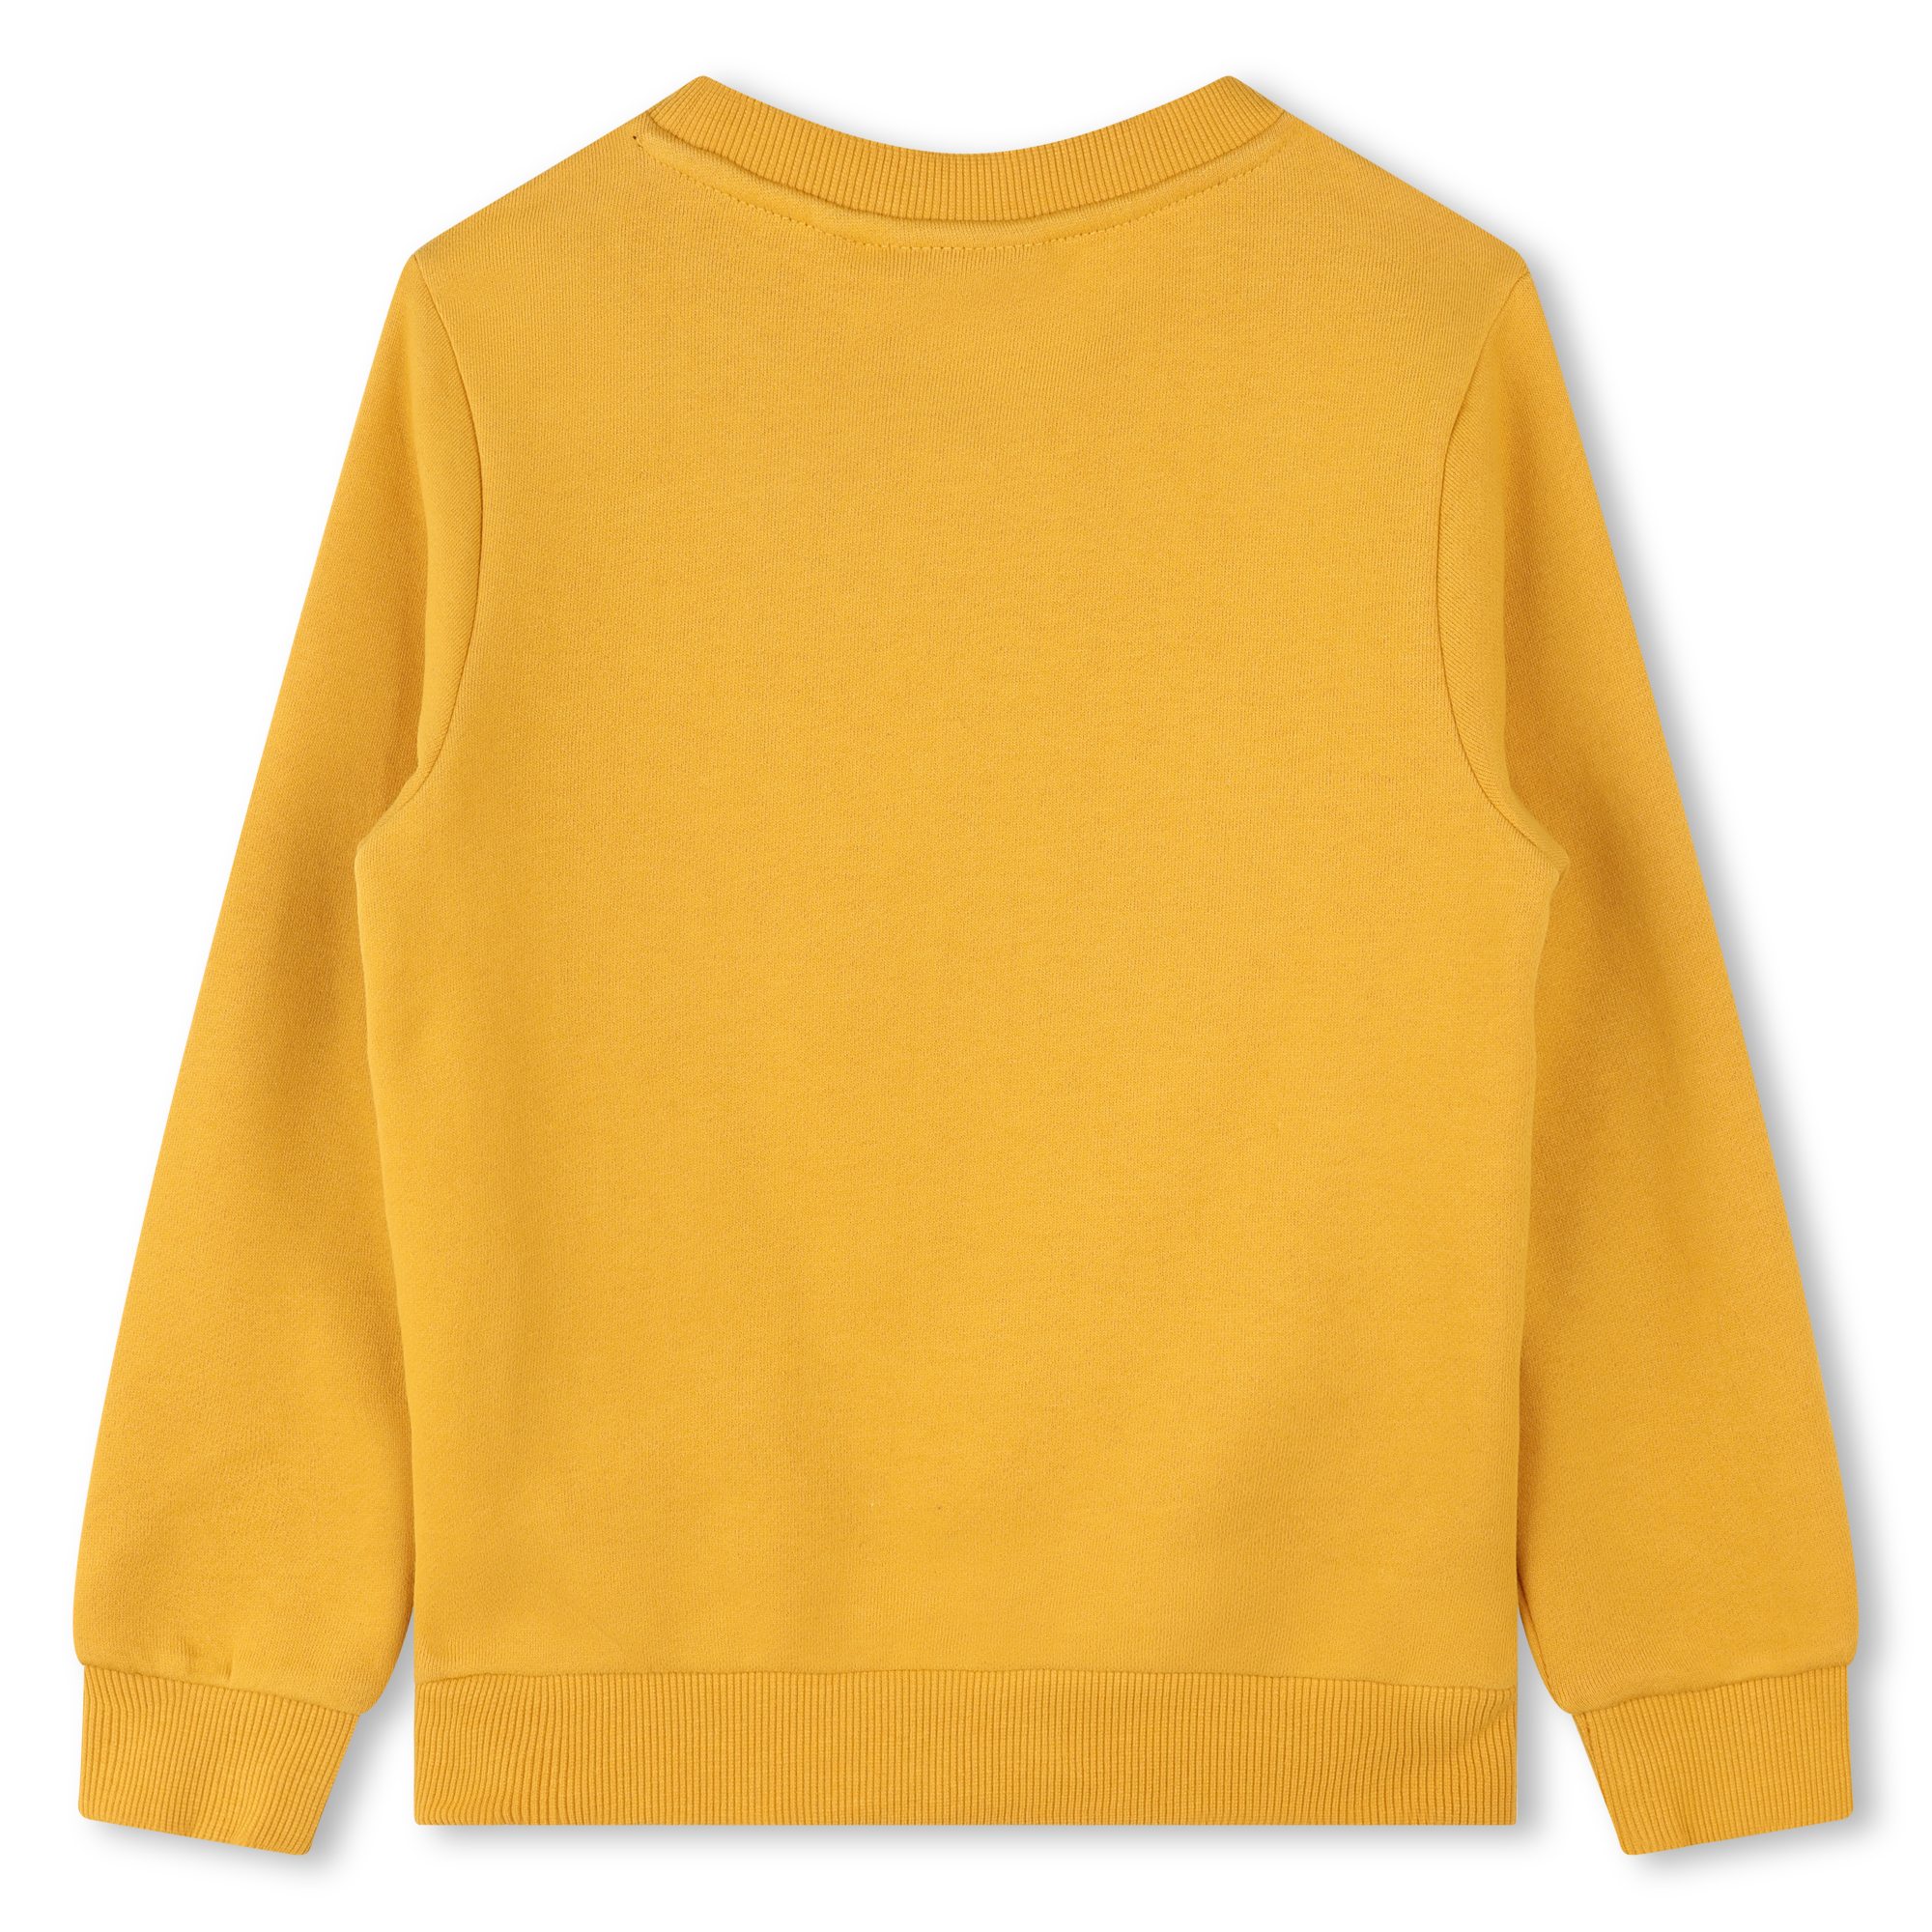 Sweater aus gebürstetem Fleece TIMBERLAND Für JUNGE